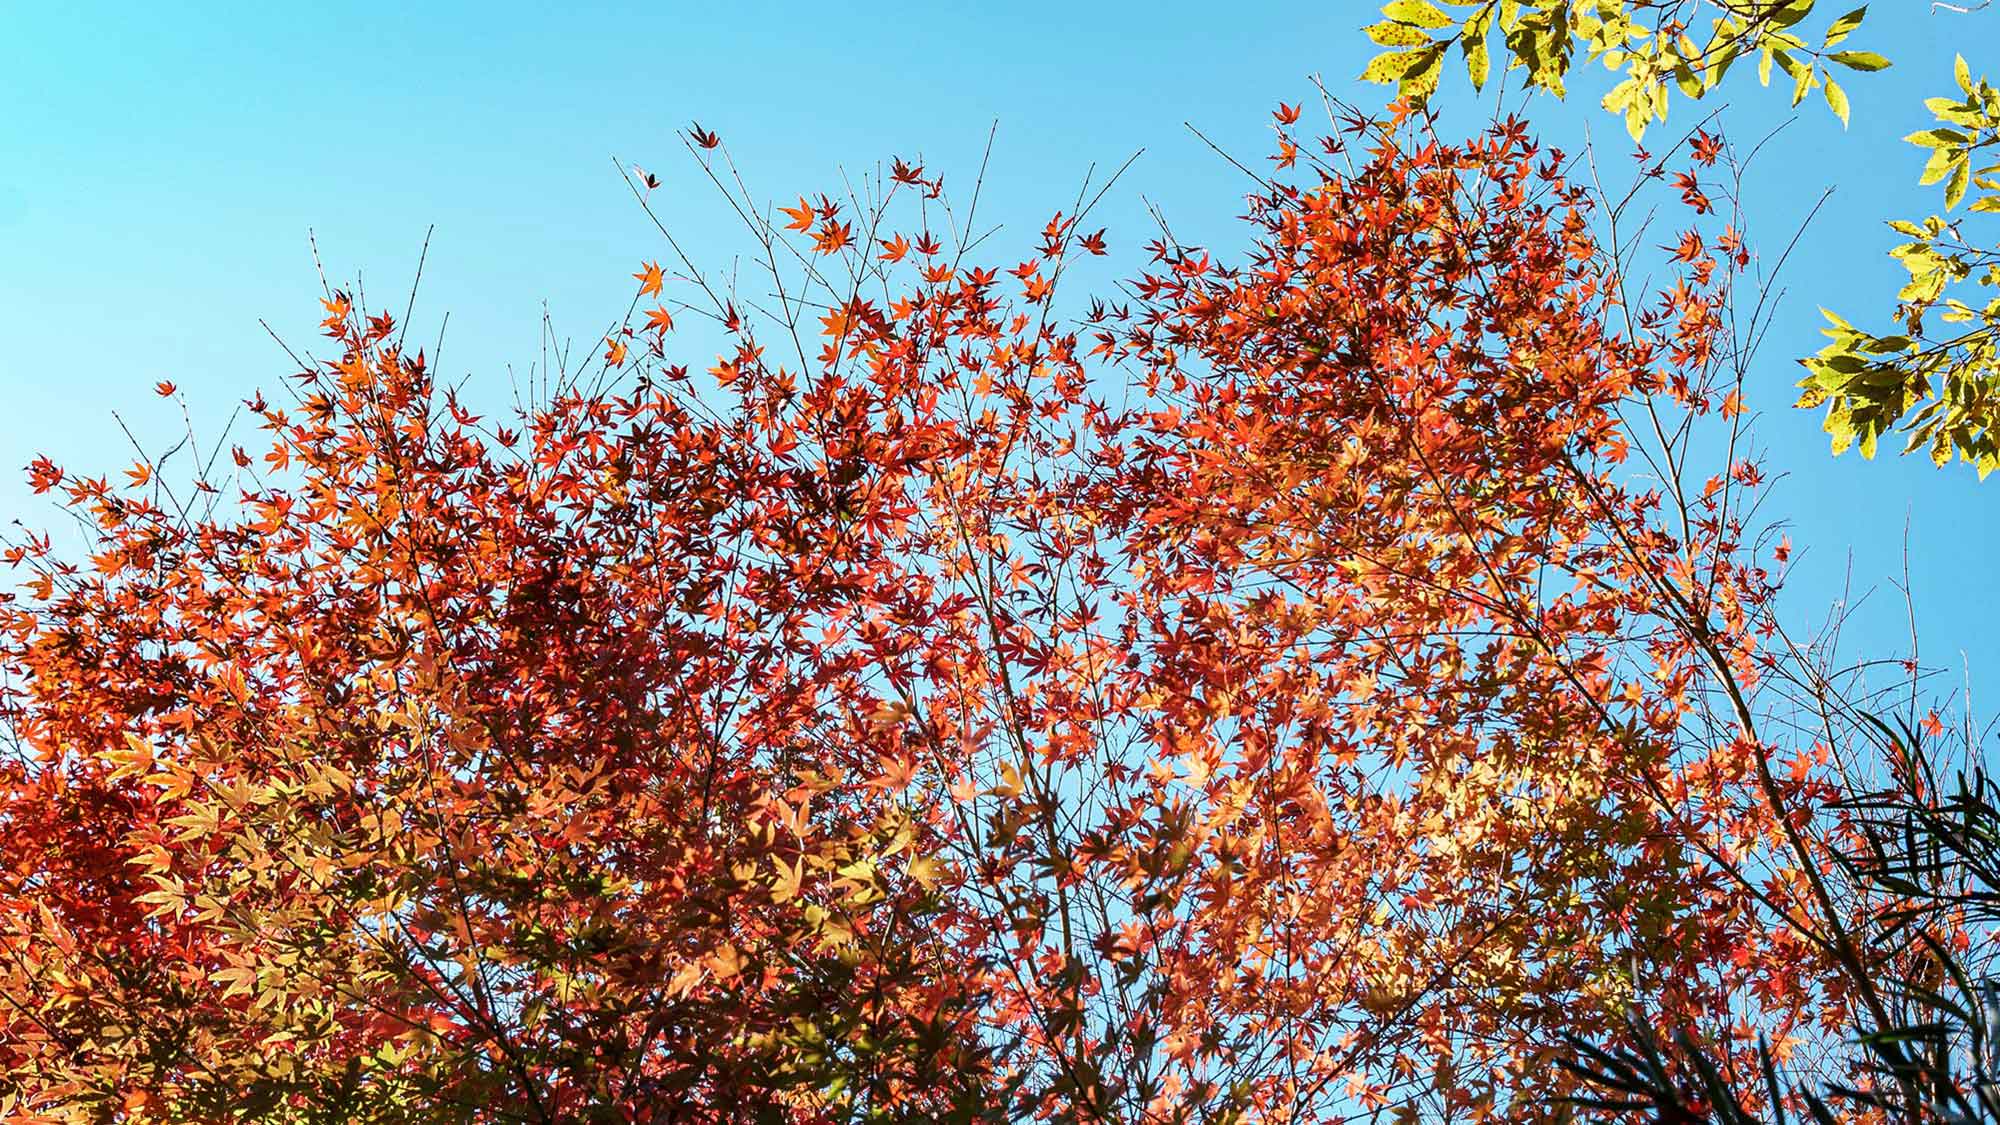 ・【紅葉】季節の変化を感じさせる庭の木々。秋には紅葉を楽しめます